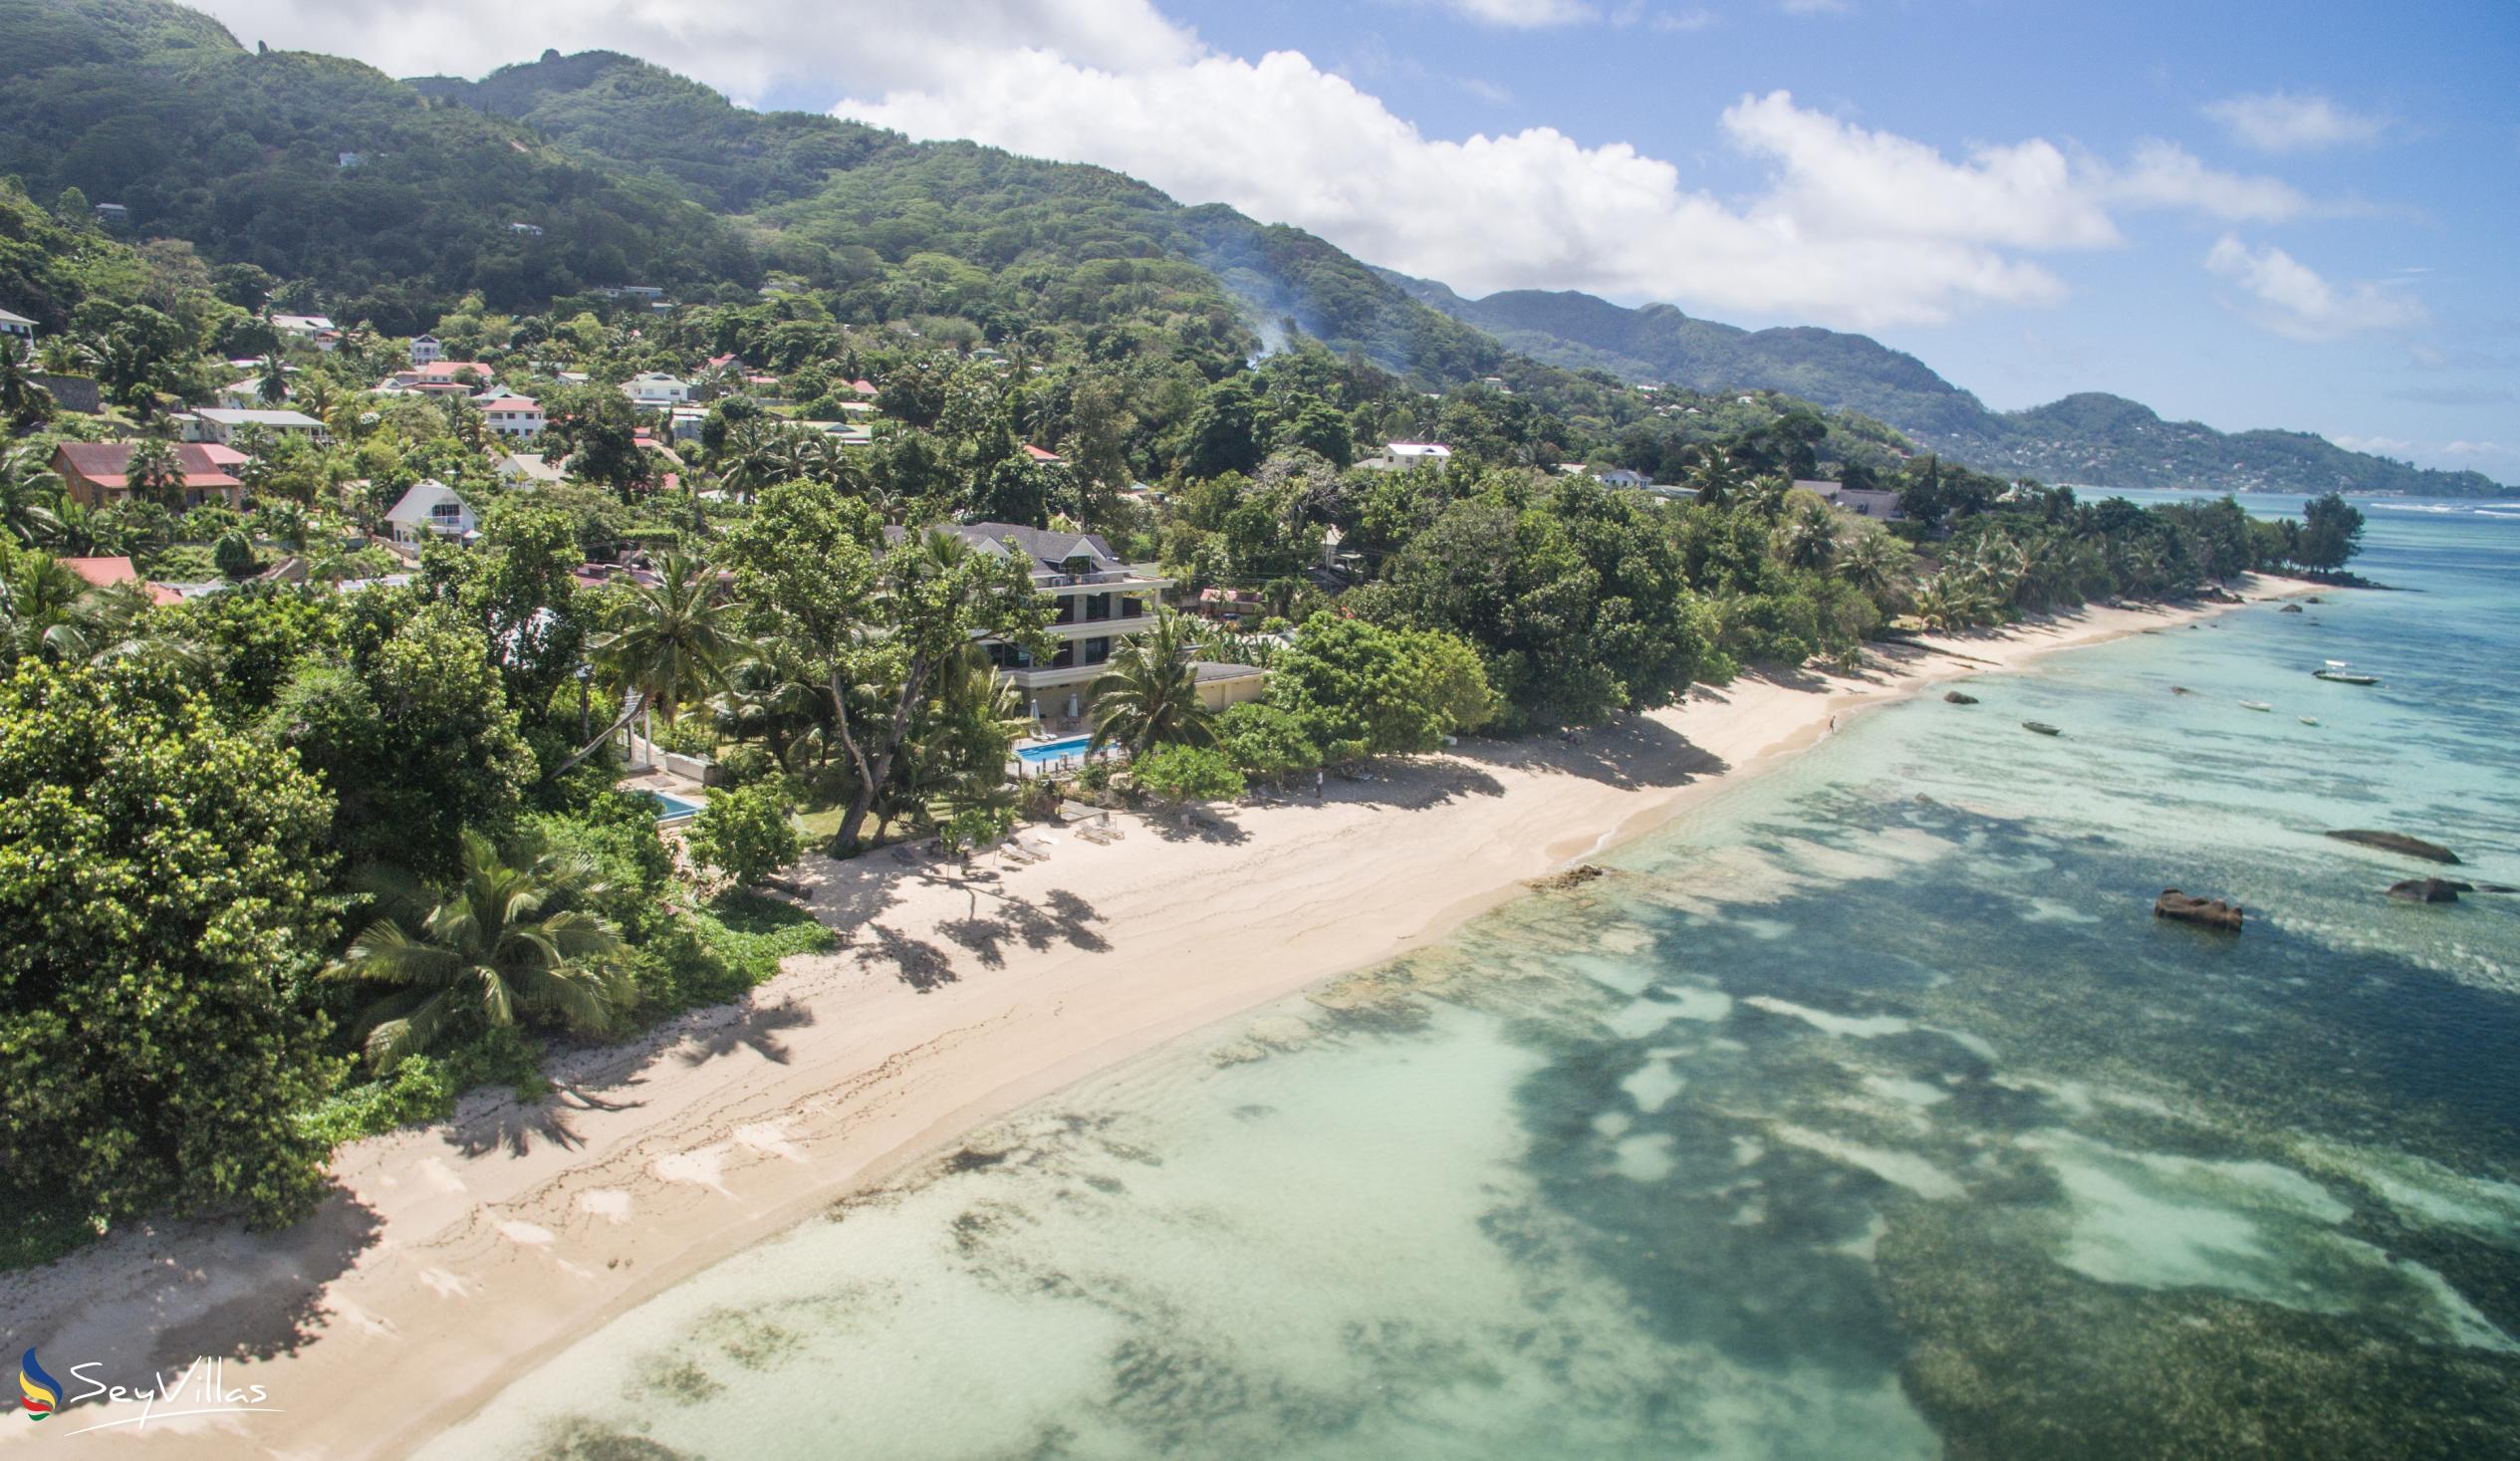 Photo 9: Crown Beach Hotel - Outdoor area - Mahé (Seychelles)